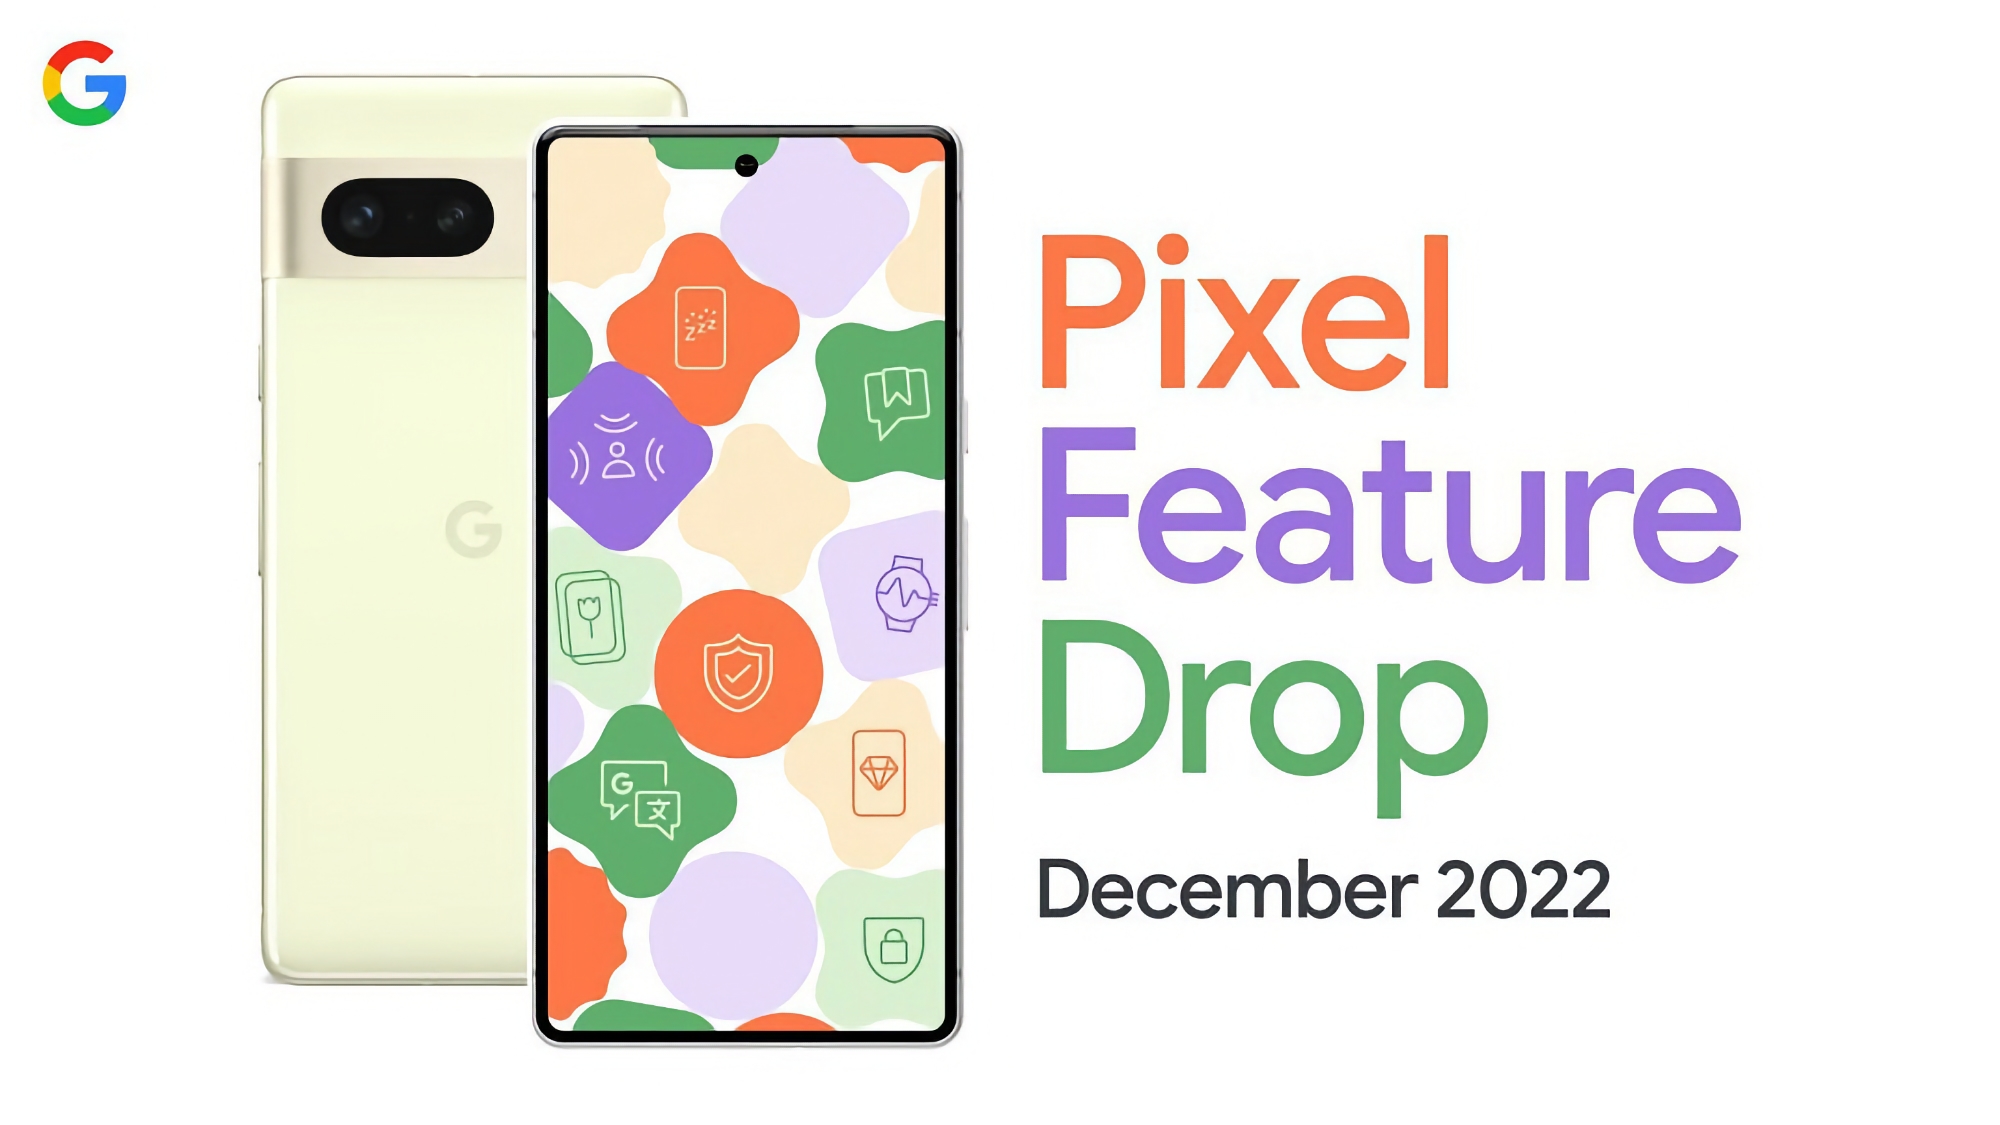 Google released a major Feature Drop update for Pixel smartphones